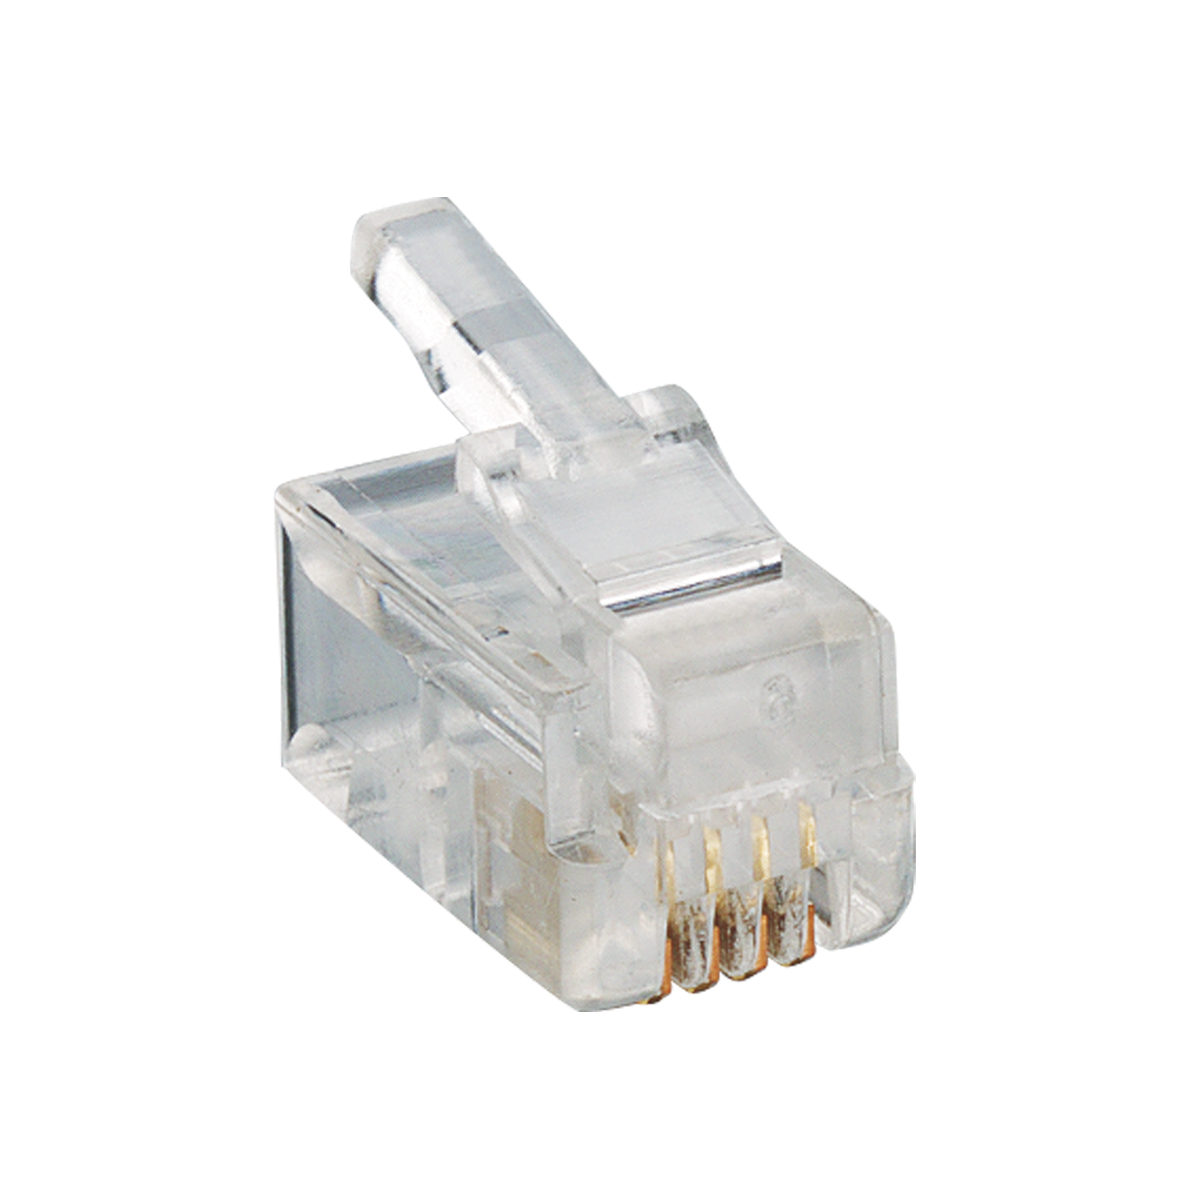 Lumberg: P 126 (Series 25 | Modular connectors)